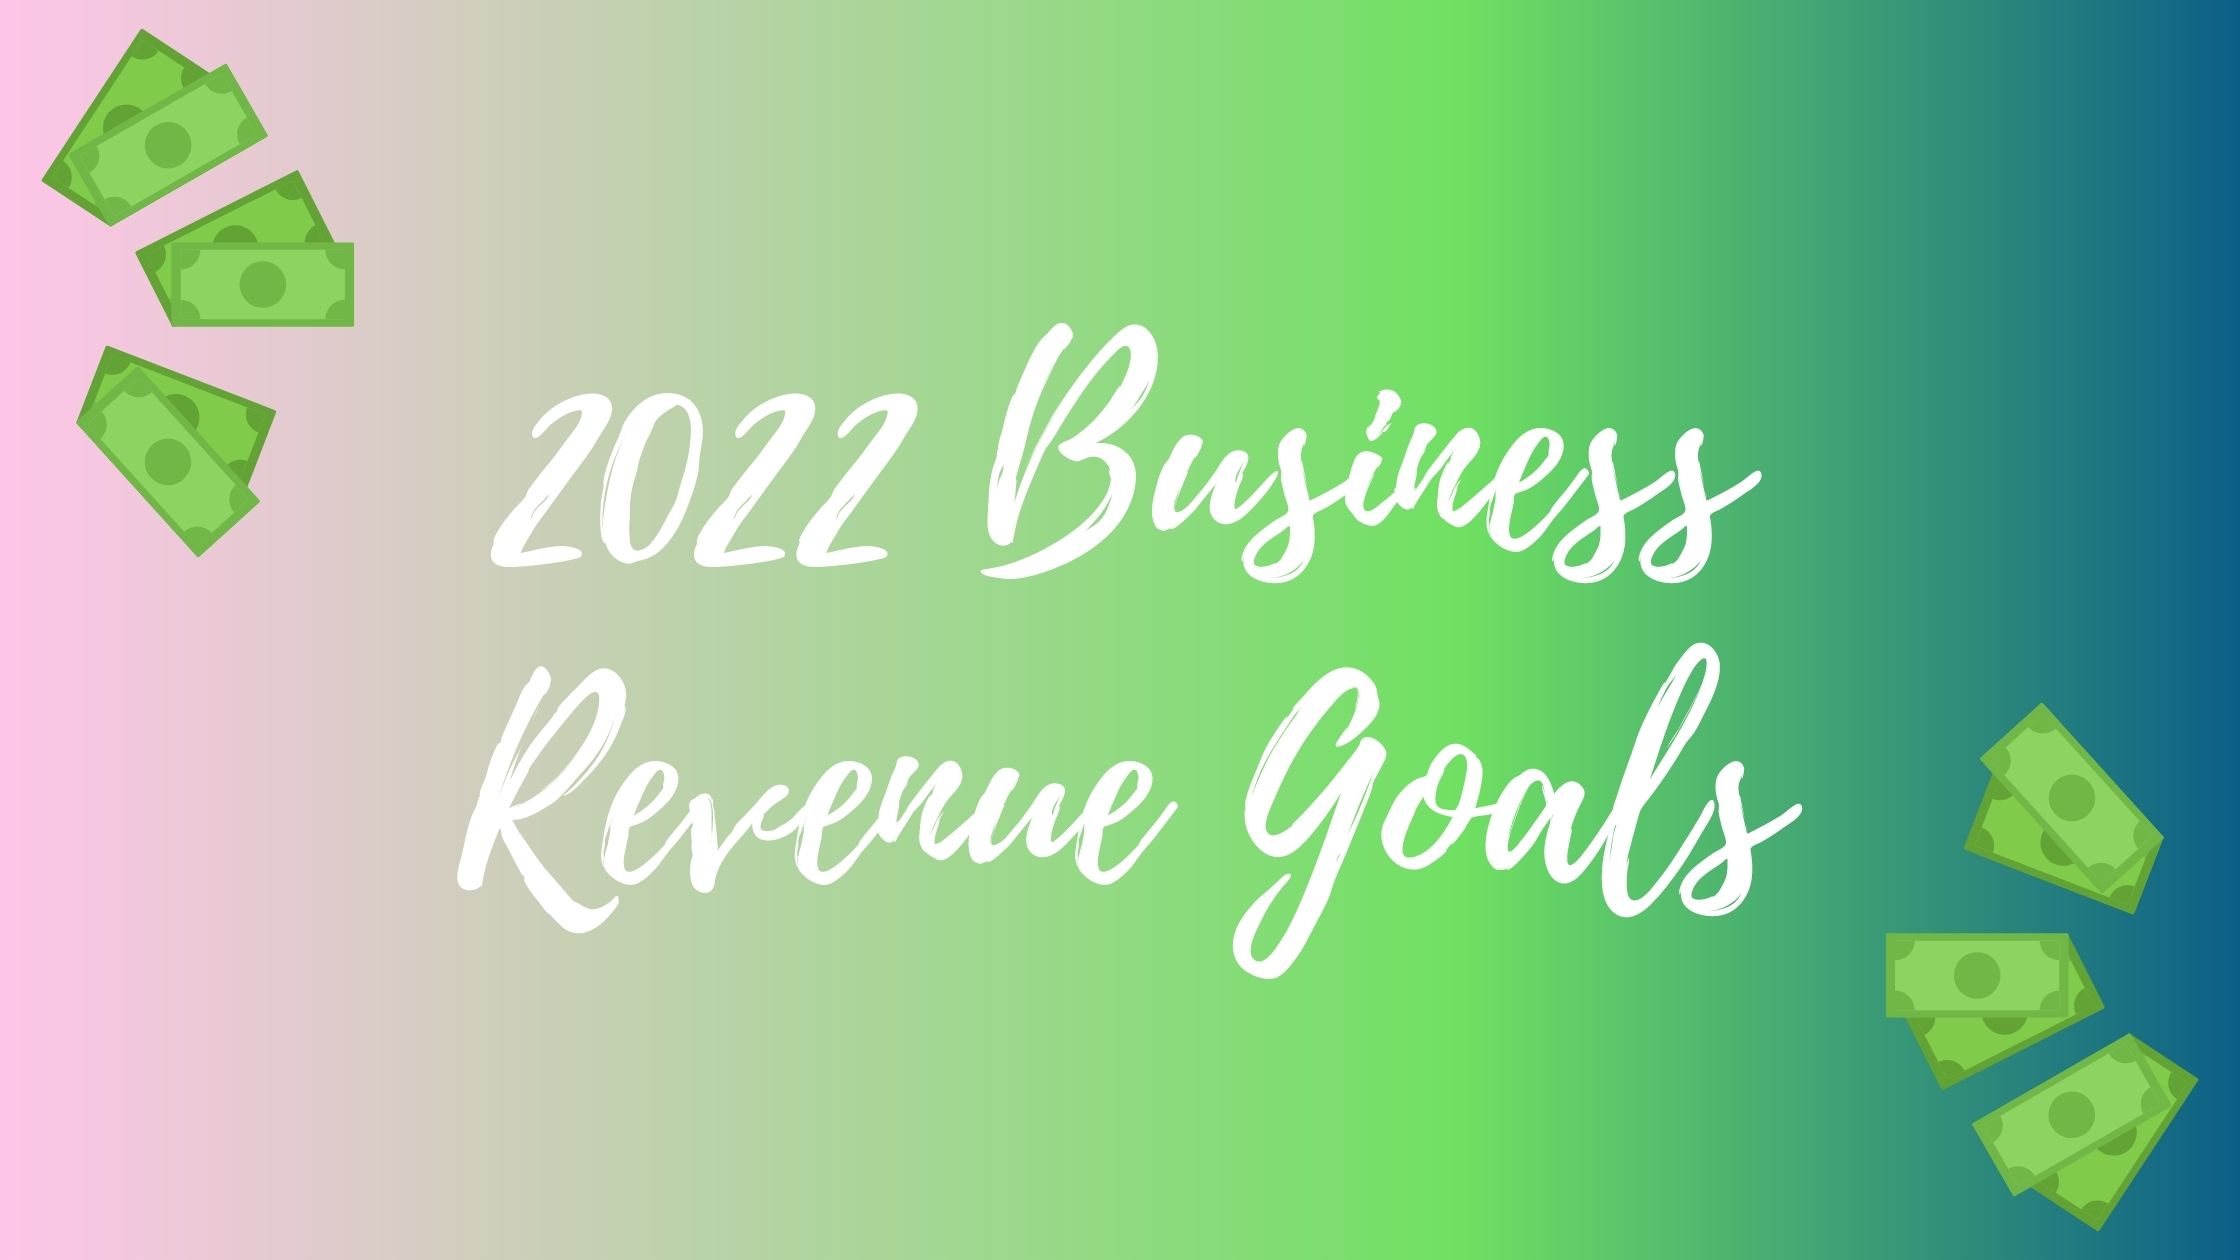 Business Revenue Goals for 2022